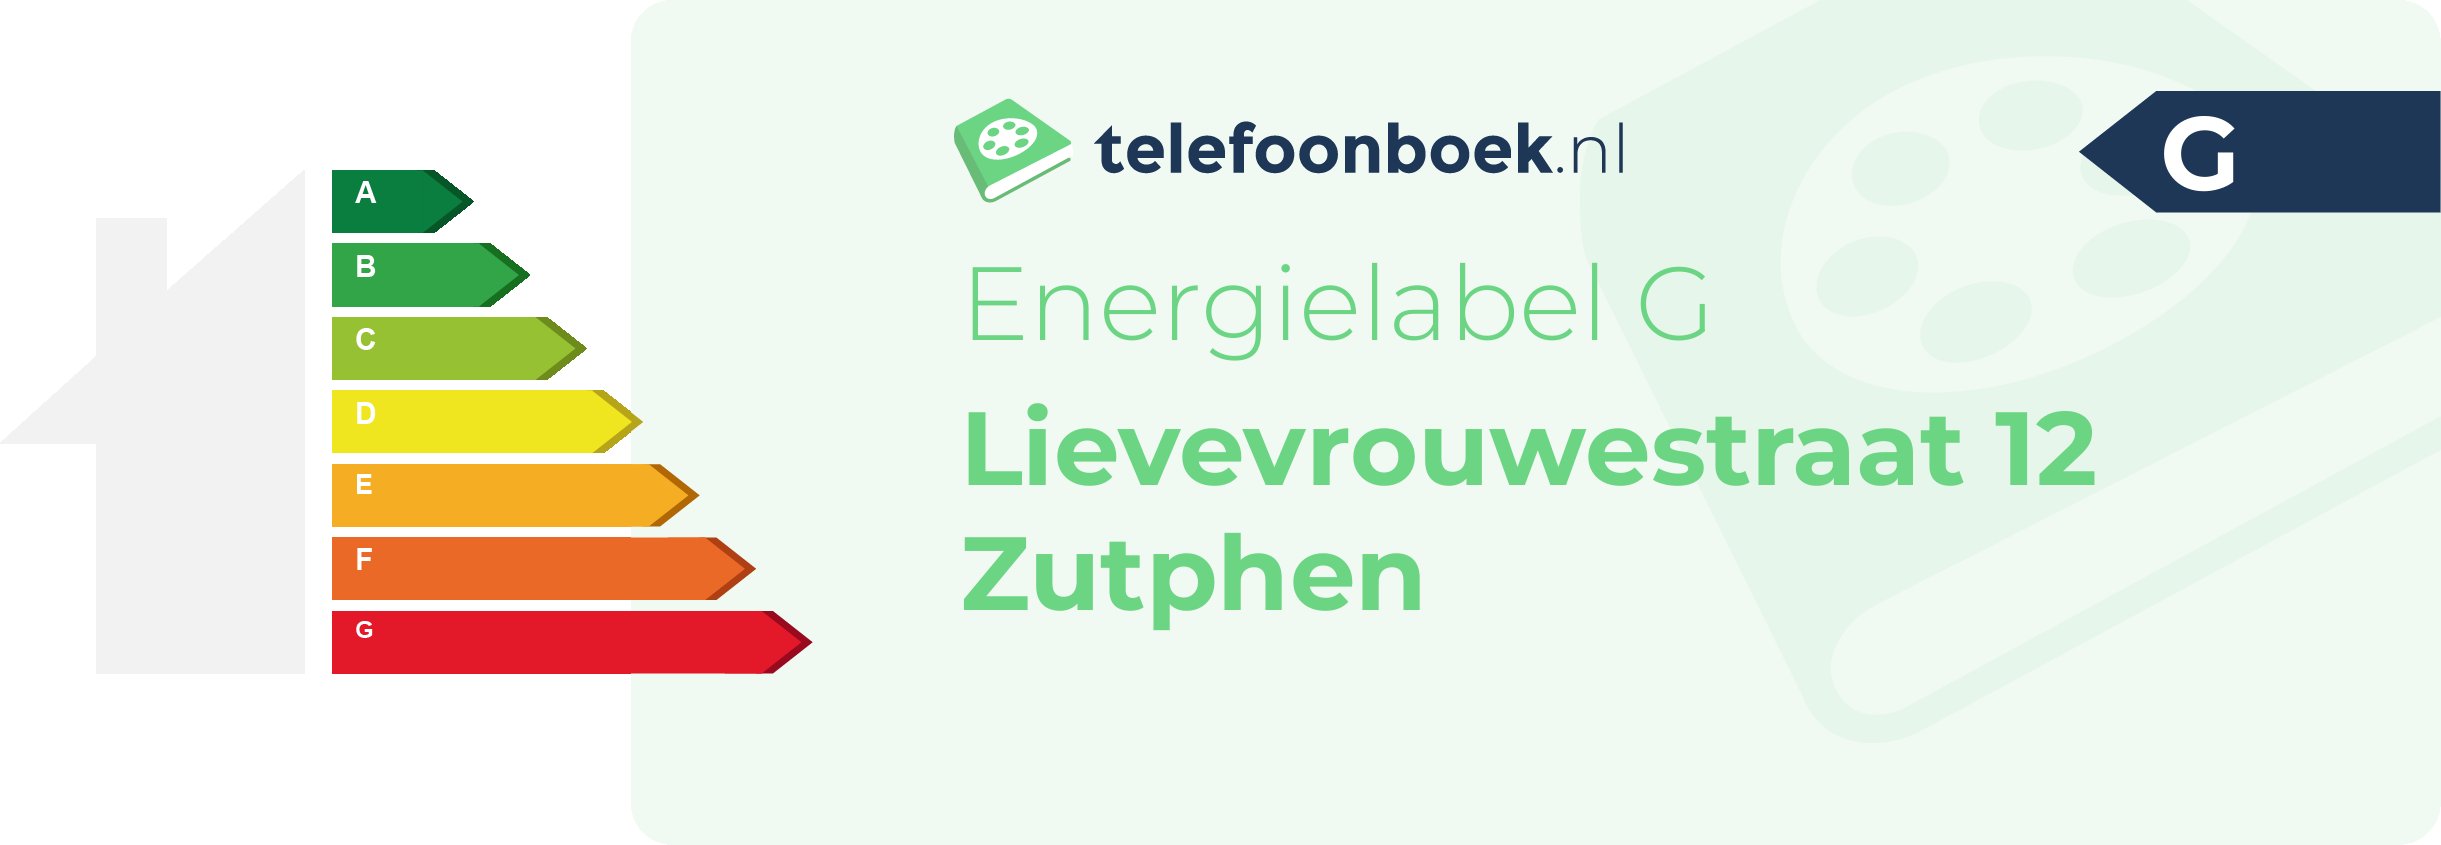 Energielabel Lievevrouwestraat 12 Zutphen